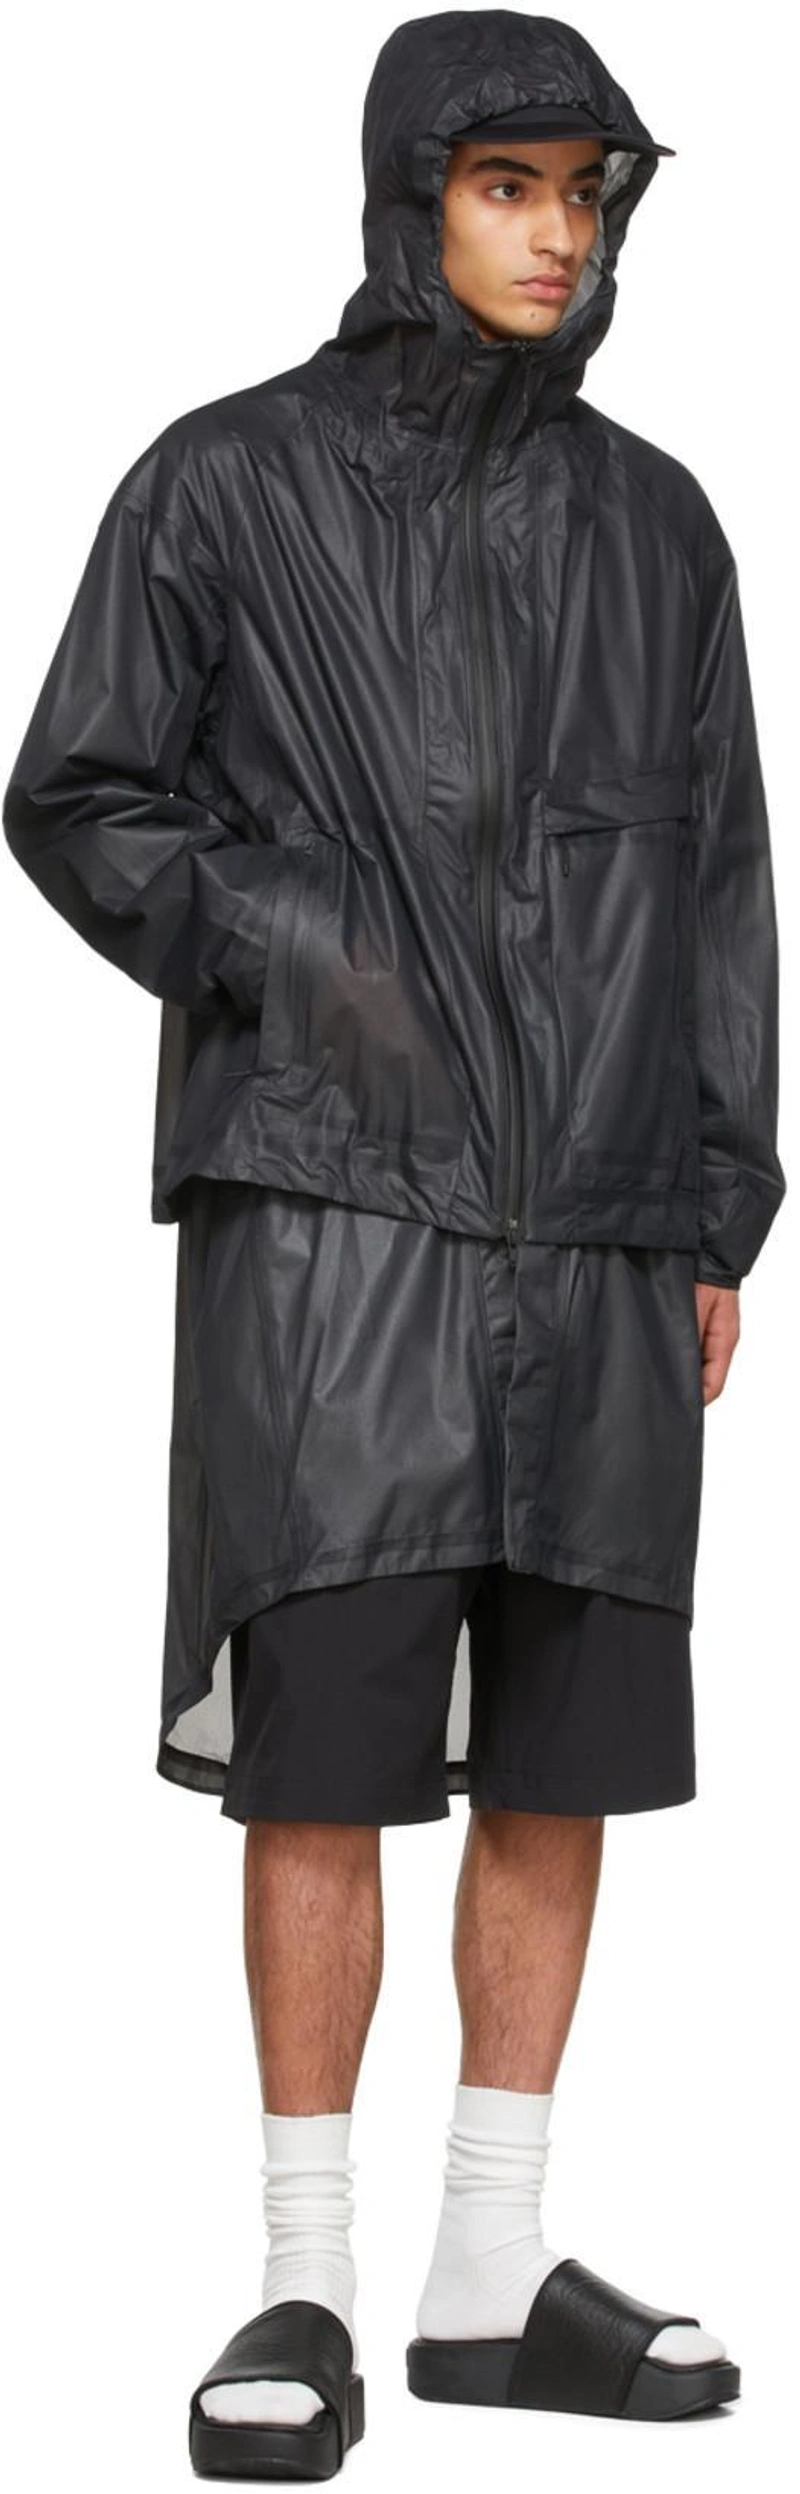 SSENSE's Post | 搭配: Y-3 20th Anniversary Logo棉质卫衣 In Black；Y-3 Black Cotton Shorts；Y-3 Black Nylon Coat